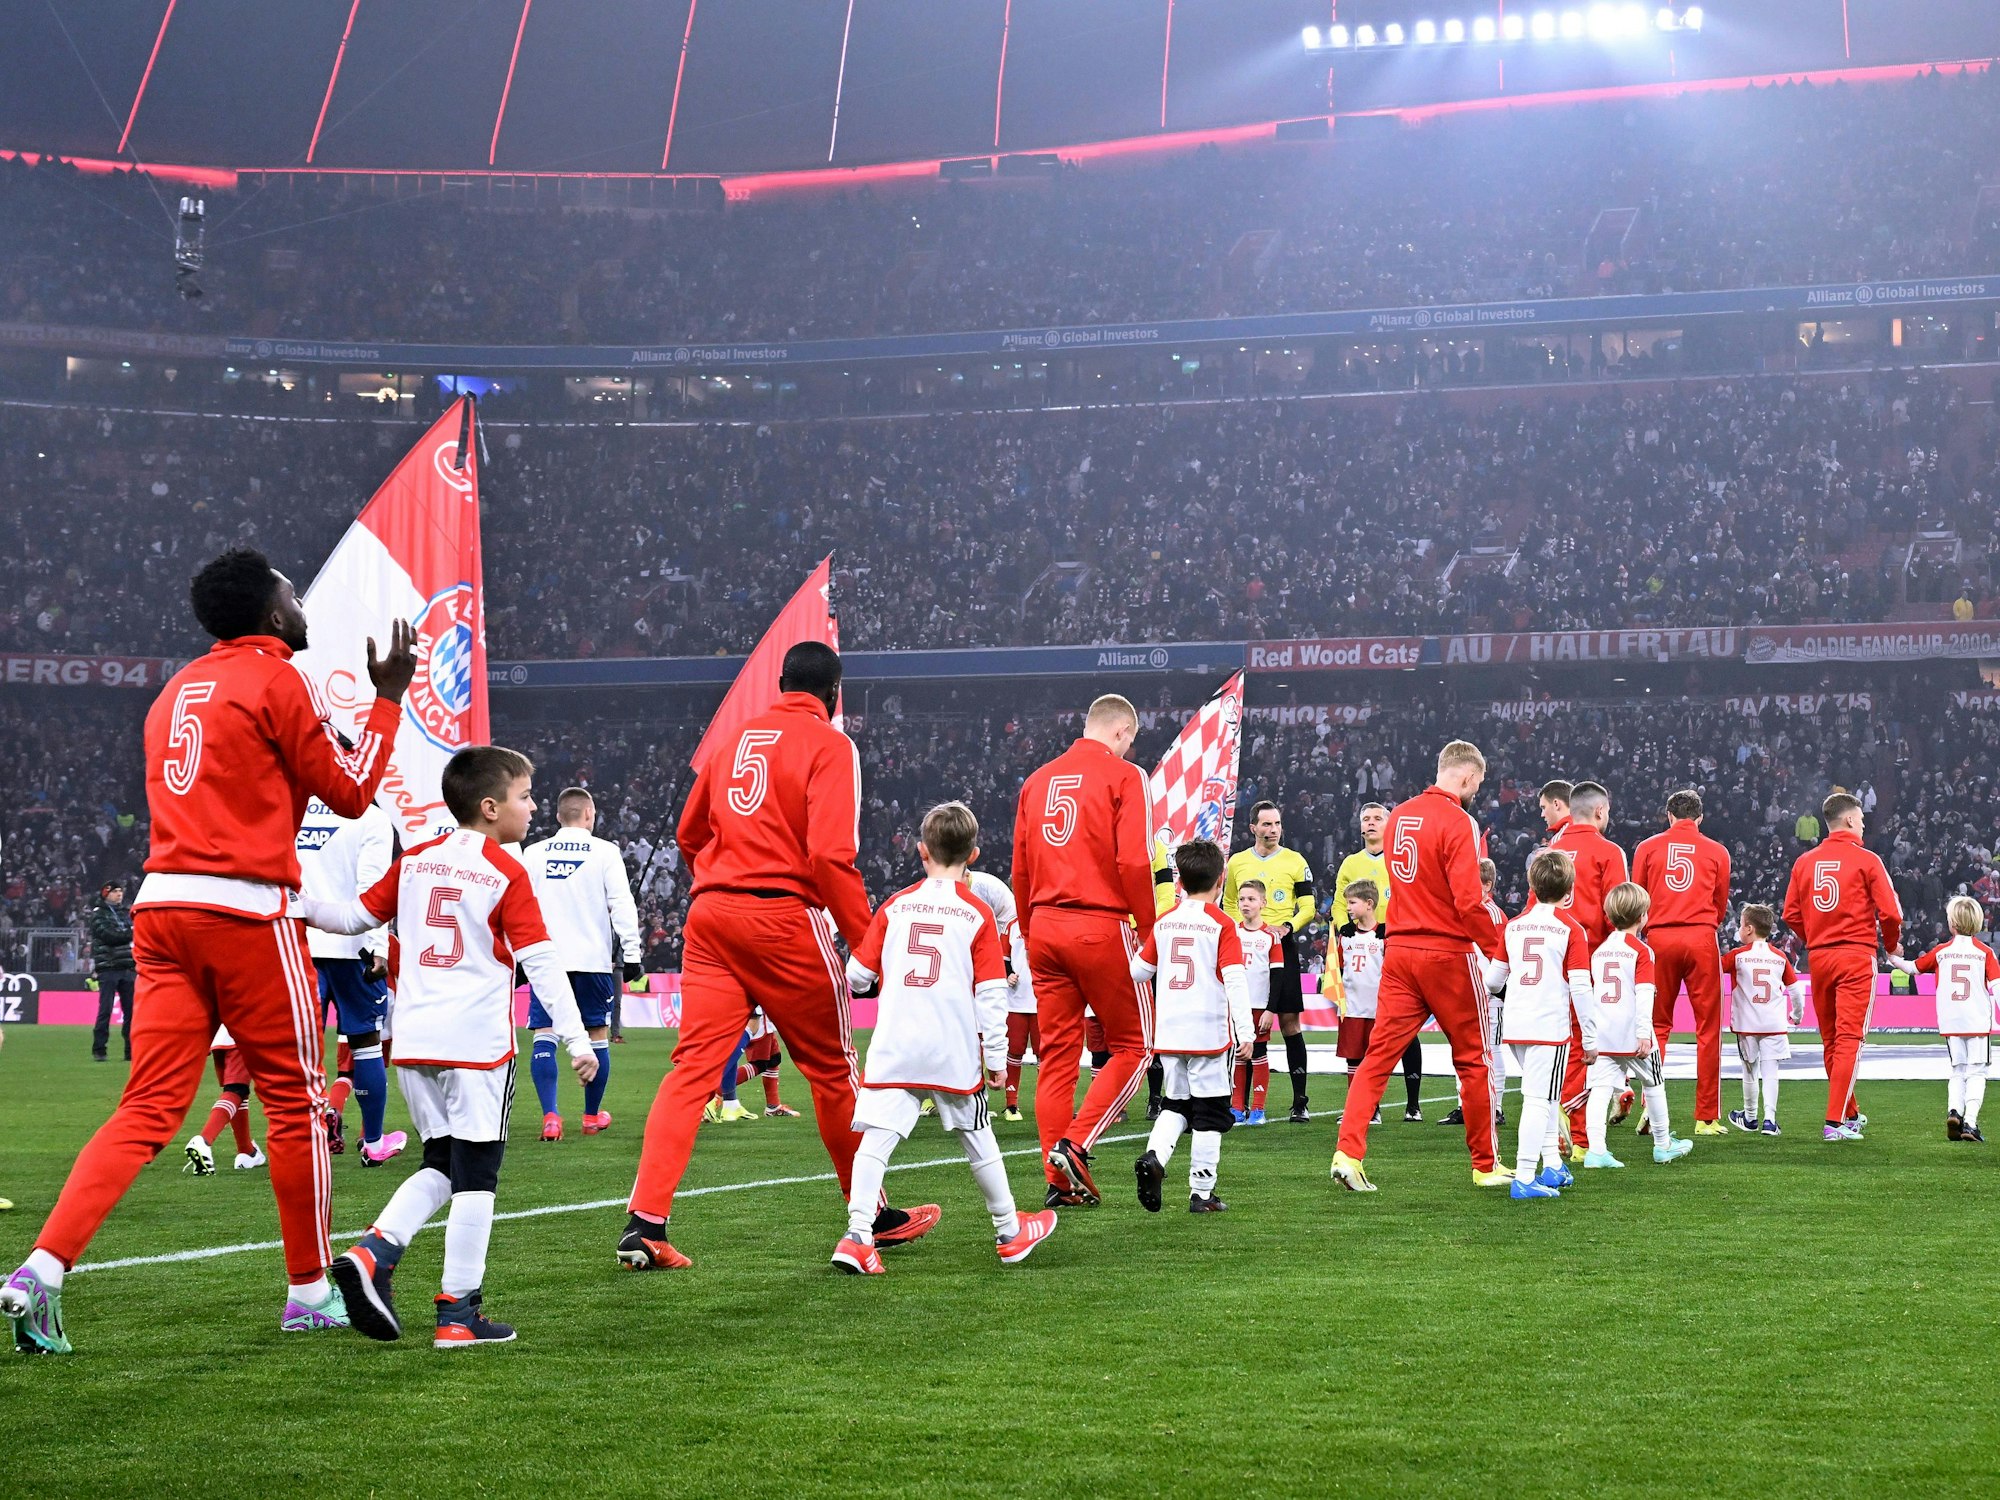 Die Spieler des FC Bayern gehen auf das Spielfeld.